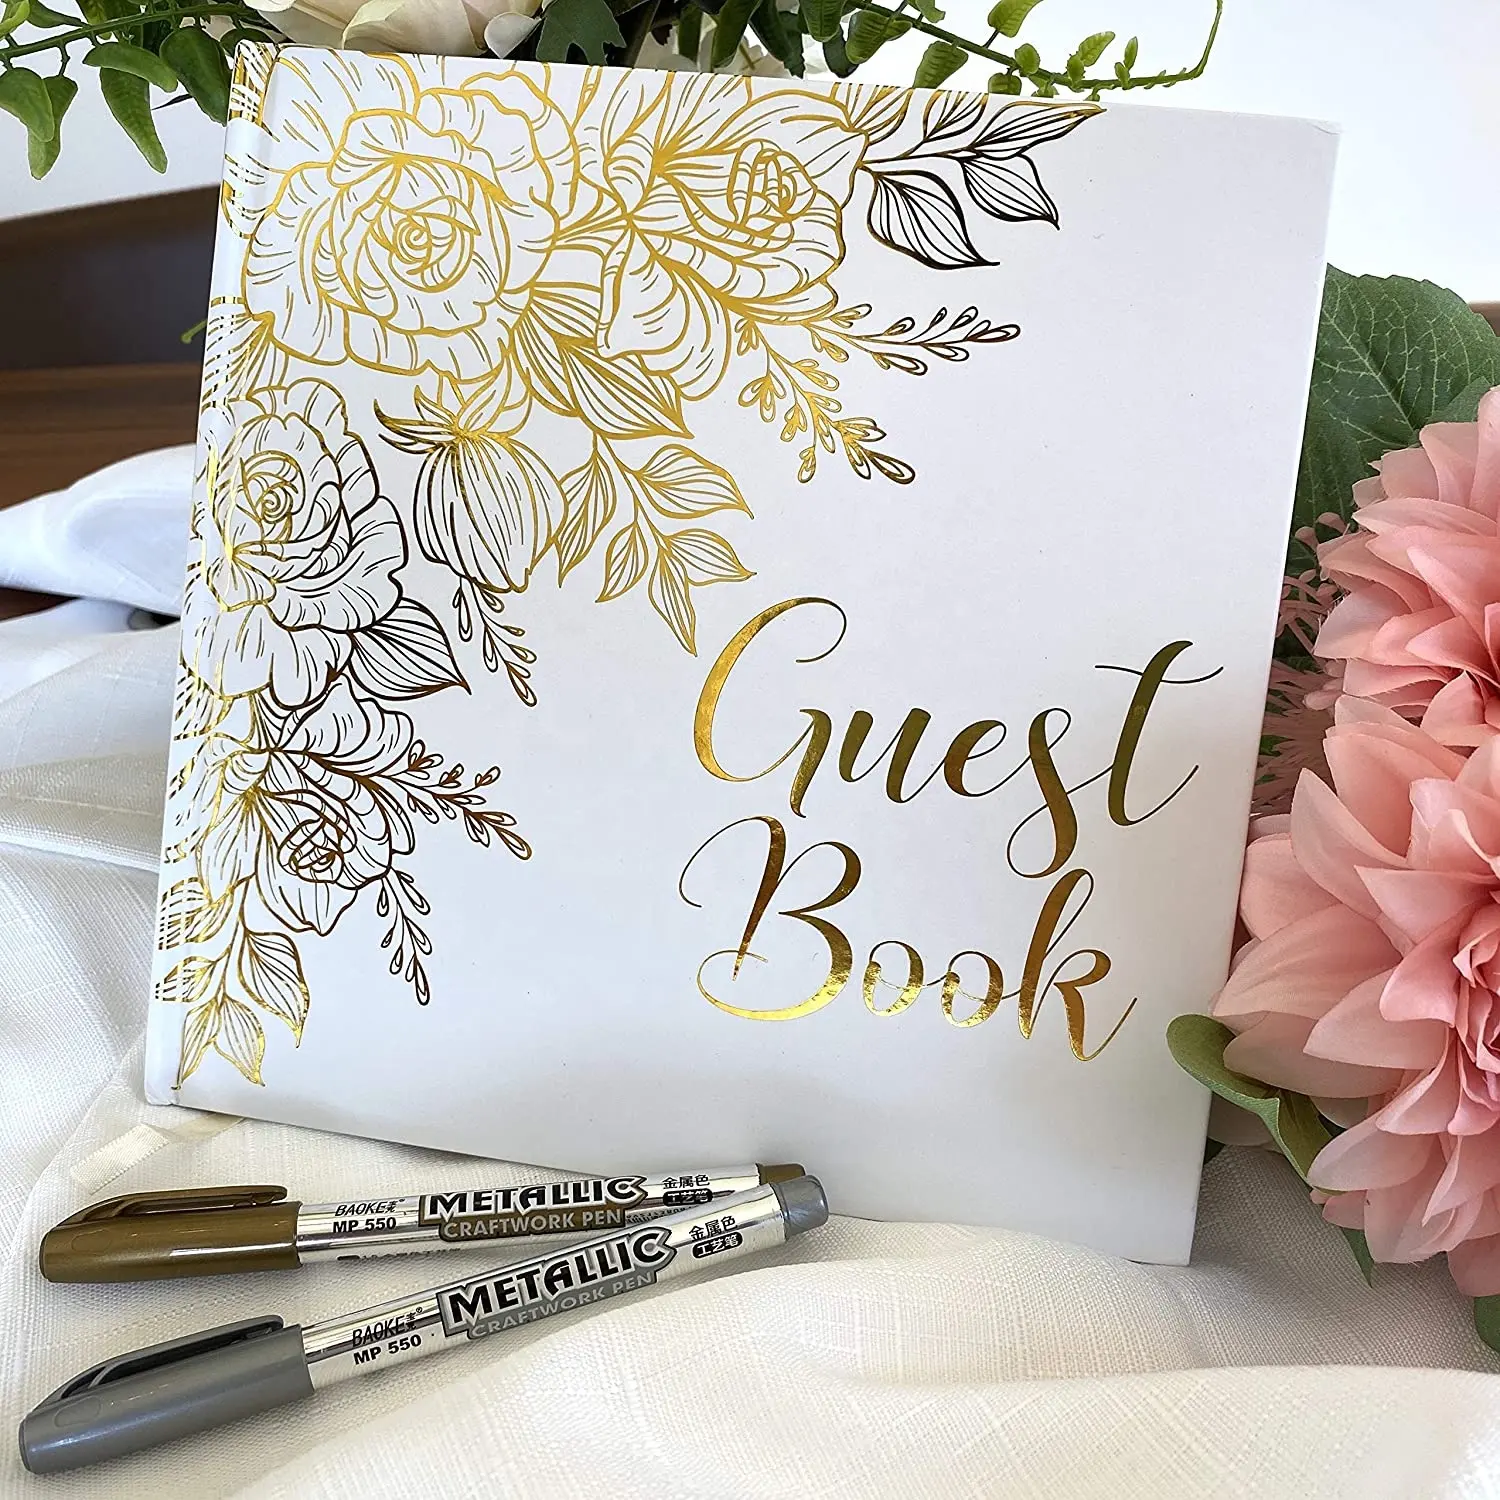 เคสแข็งขอบทองทองมีกระดาษสีขาวหนาอัลบั้มรูปสมุดลงชื่อเข้าใช้ในงานแต่งงานพร้อมปากกา